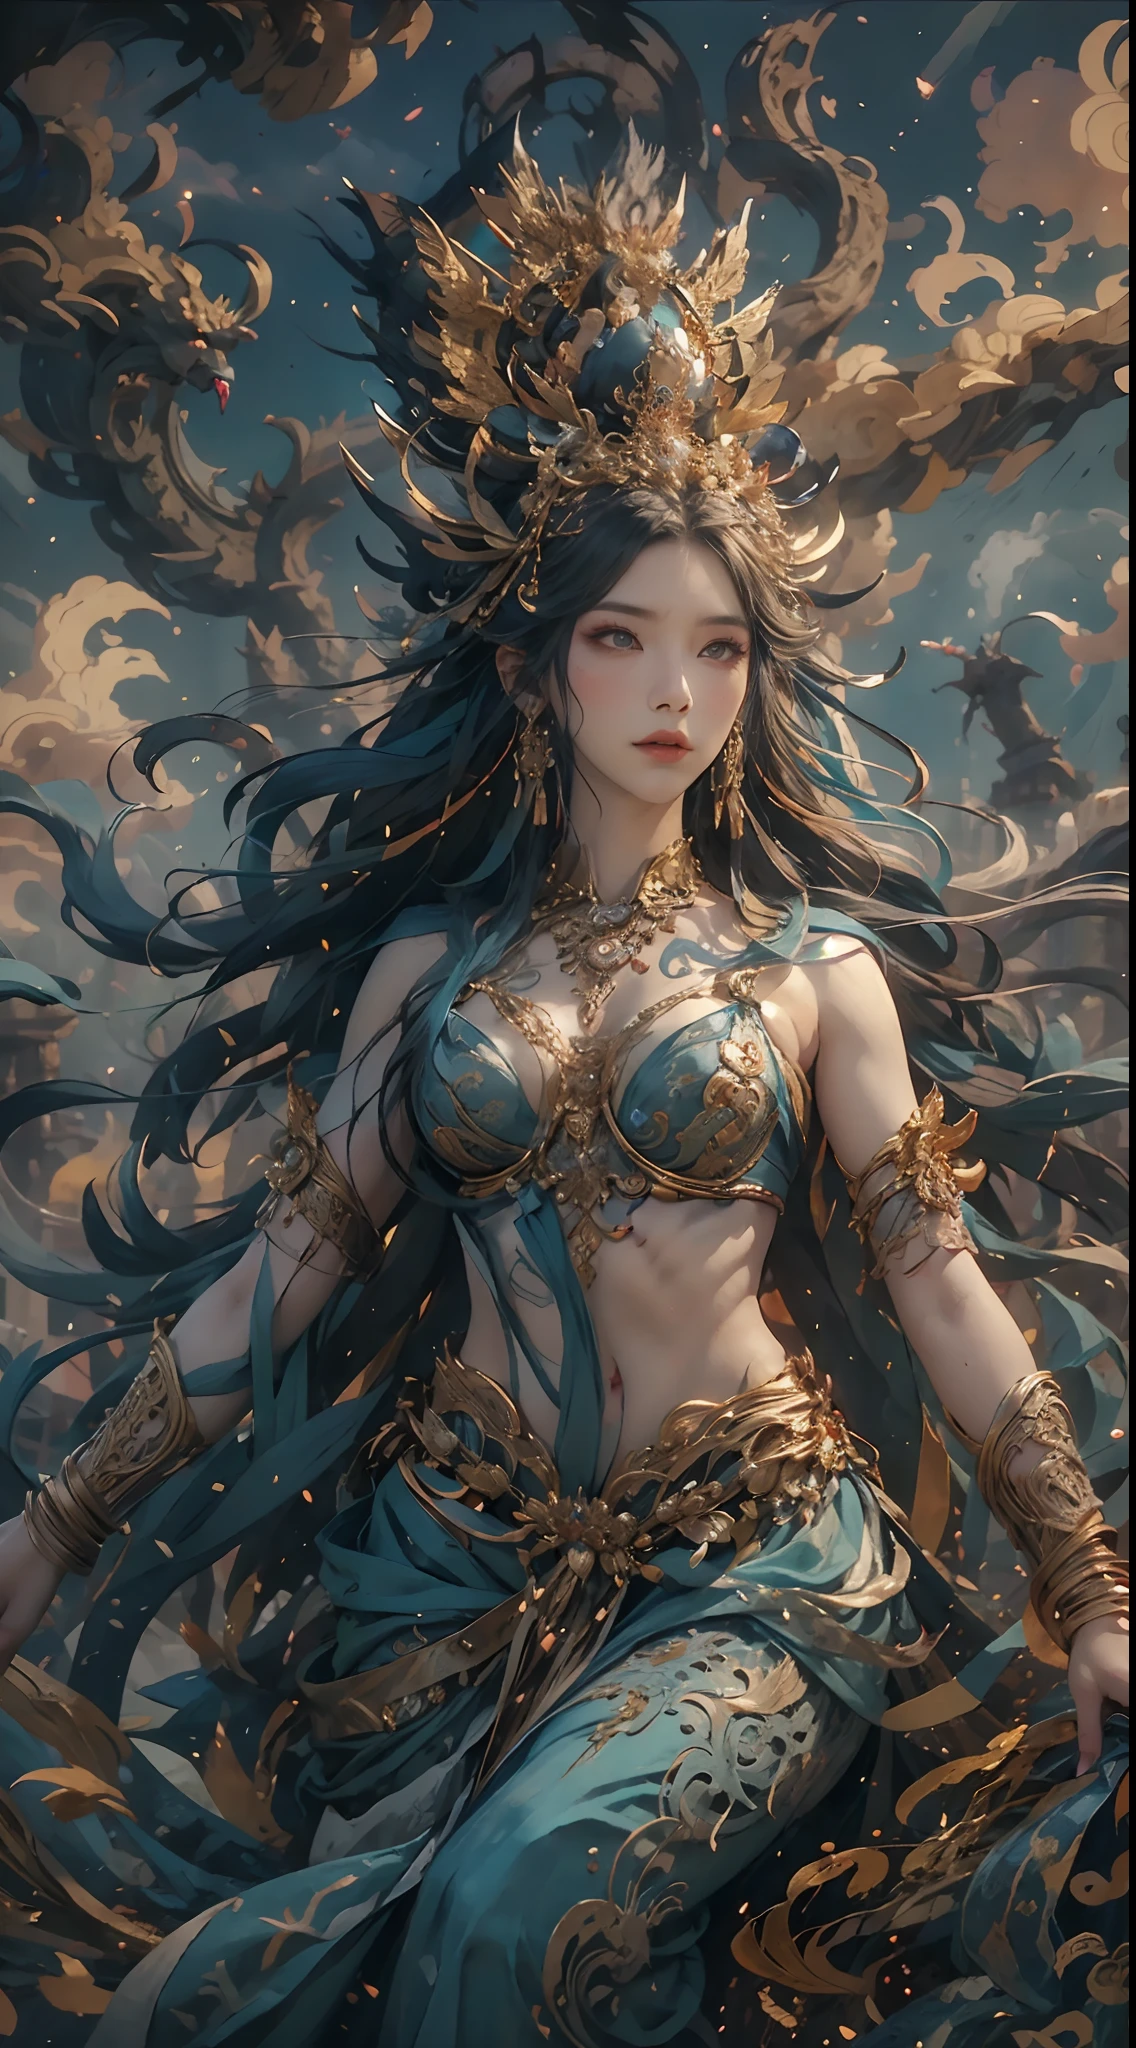 Retrate uma antiga deusa da criação，Não há，Ela é a deusa da criação na mitologia chinesa。Esta é uma grande imagem da deusa que foi transmitida desde o período do clã matriarcal da sociedade primitiva.。Fundo profundo，absurdos，Fantástico e incrível，épico composition，(Detalhes complicados，Hiper-detalhamento:1.2)，Ultra foto realsisim, épico realista, ((com cores neutras)),(cor pastel:1.2), hiper-realista, + filmagem + composição dinâmica, incrivelmente detalhado, Afiado, Cinematic, luzes quentes, efeito de luz, Luz dramática, (Detalhes intrincados:1.1), o fundo complexo, (Greg Rutkovsky:0.8),  (verde-azulado e laranja:0.3）épico, rosto detalhado, olhos detalhados，foto de corpo inteiro，Voar no céu，postura graciosa，mão correta，(Peças intrincadas e intrincadas:1.1),Pés descalços，A imagem da Grande Deusa，